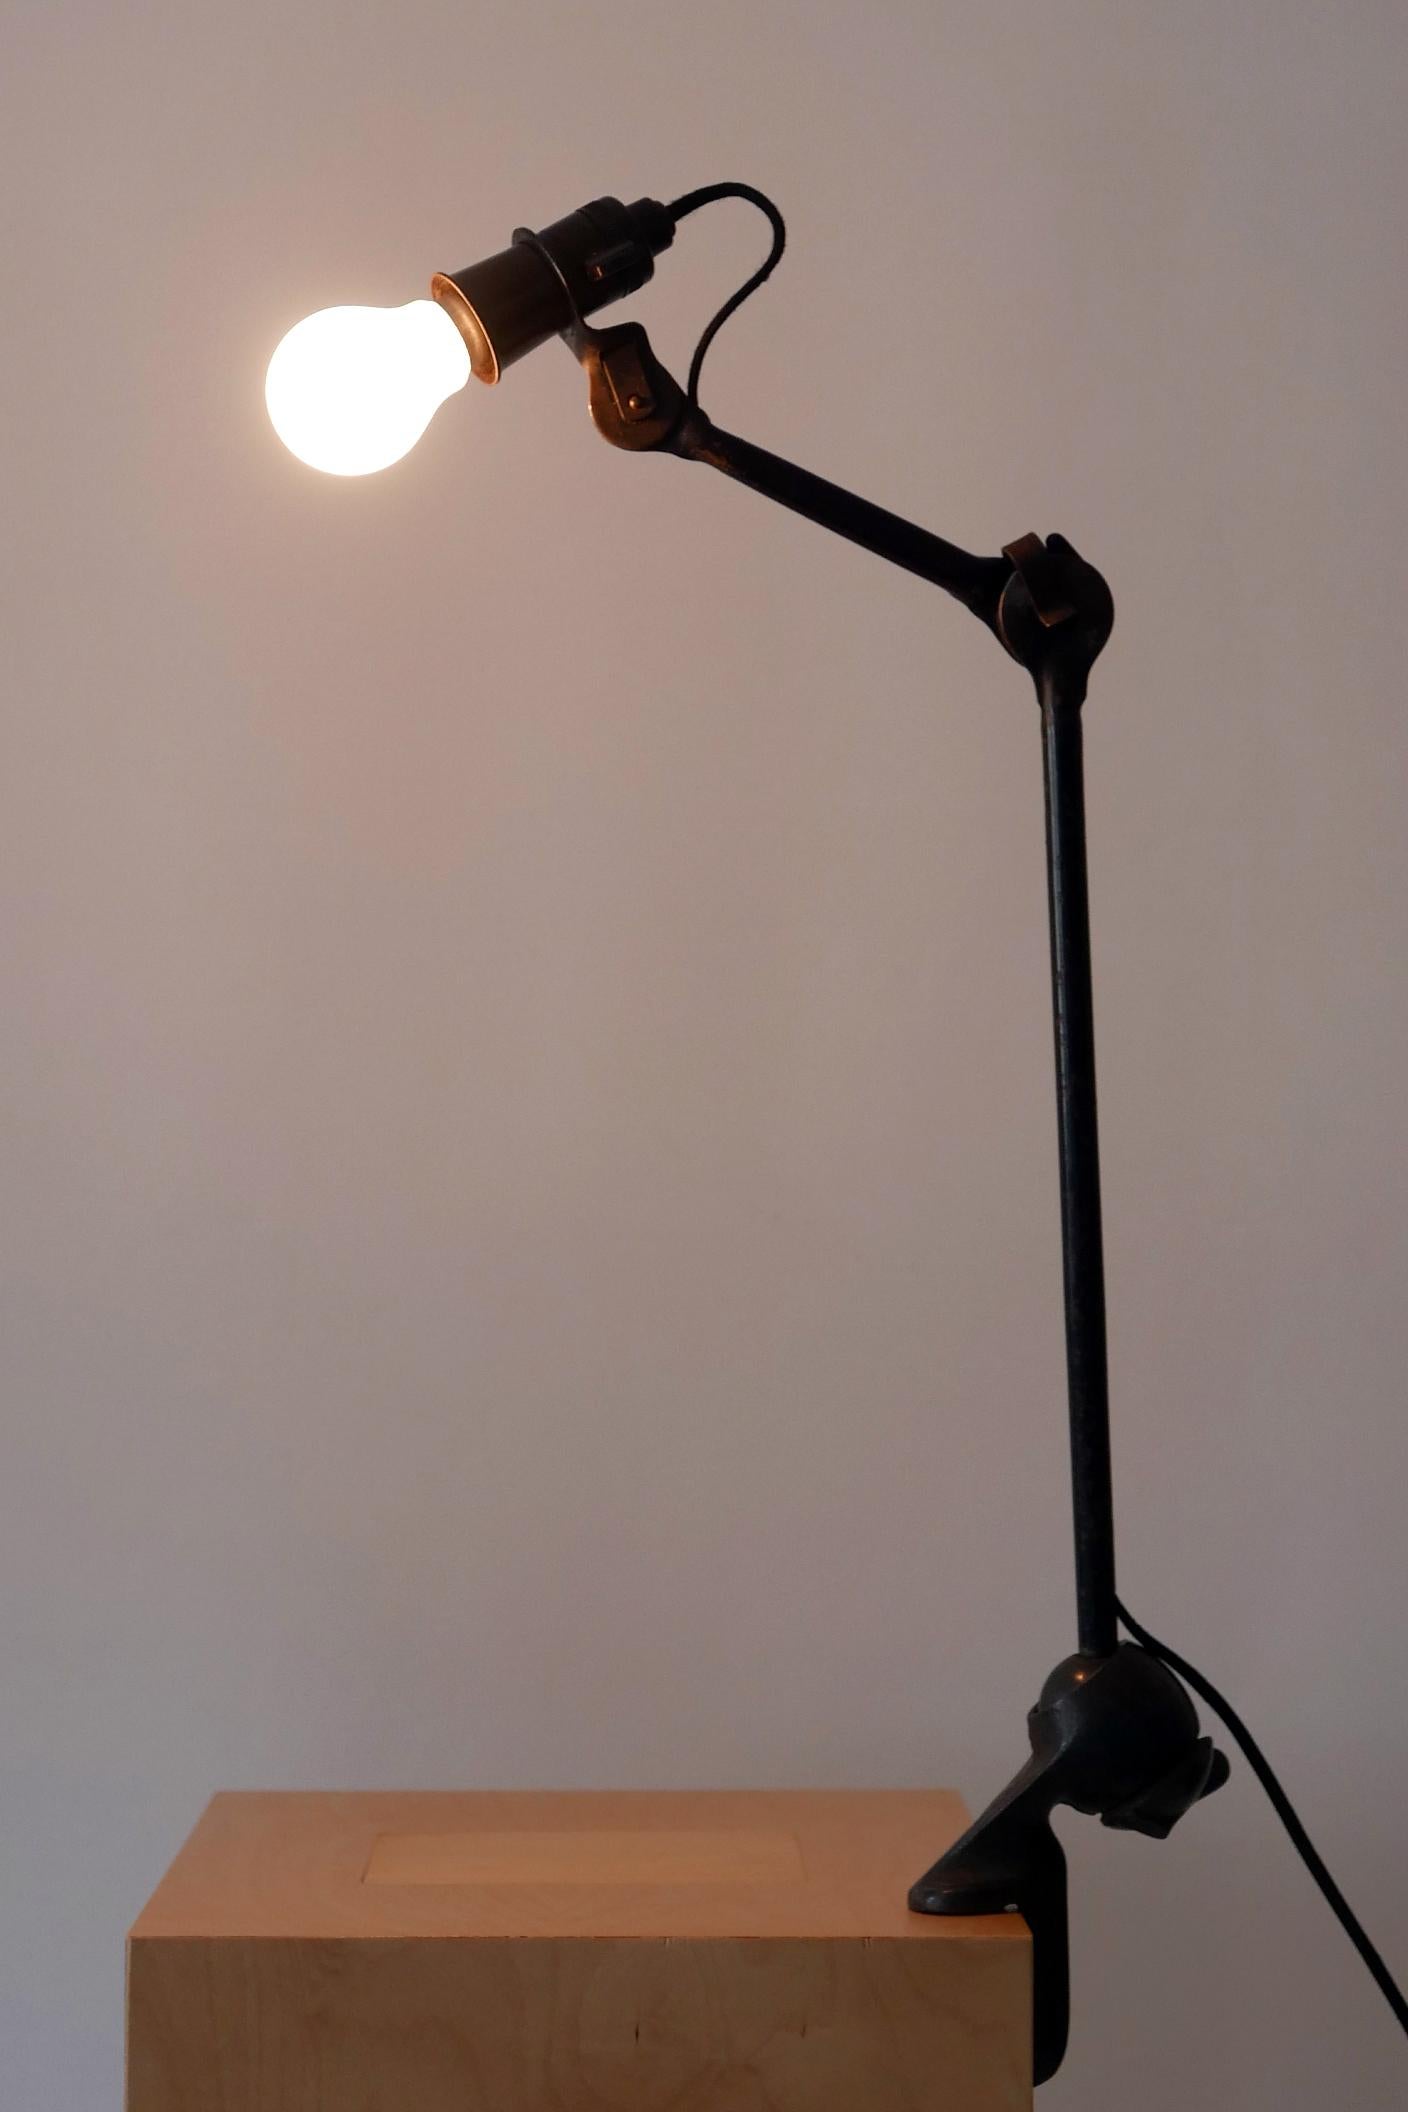 Modernist Task Light or Clamp Table Lamp by Bernard-Albin Gras for Gras, 1920s For Sale 5